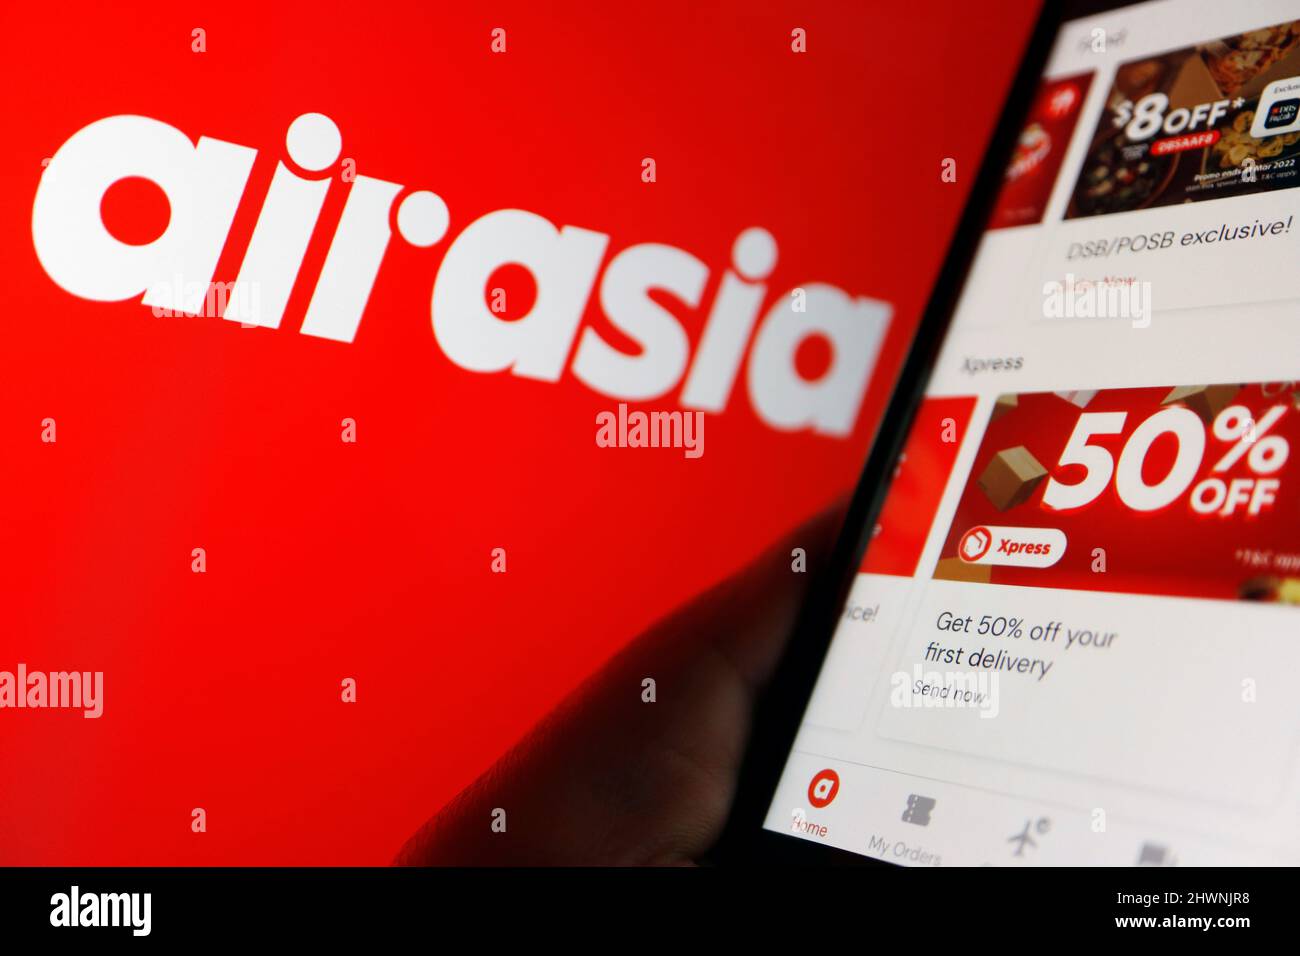 Airasia super app